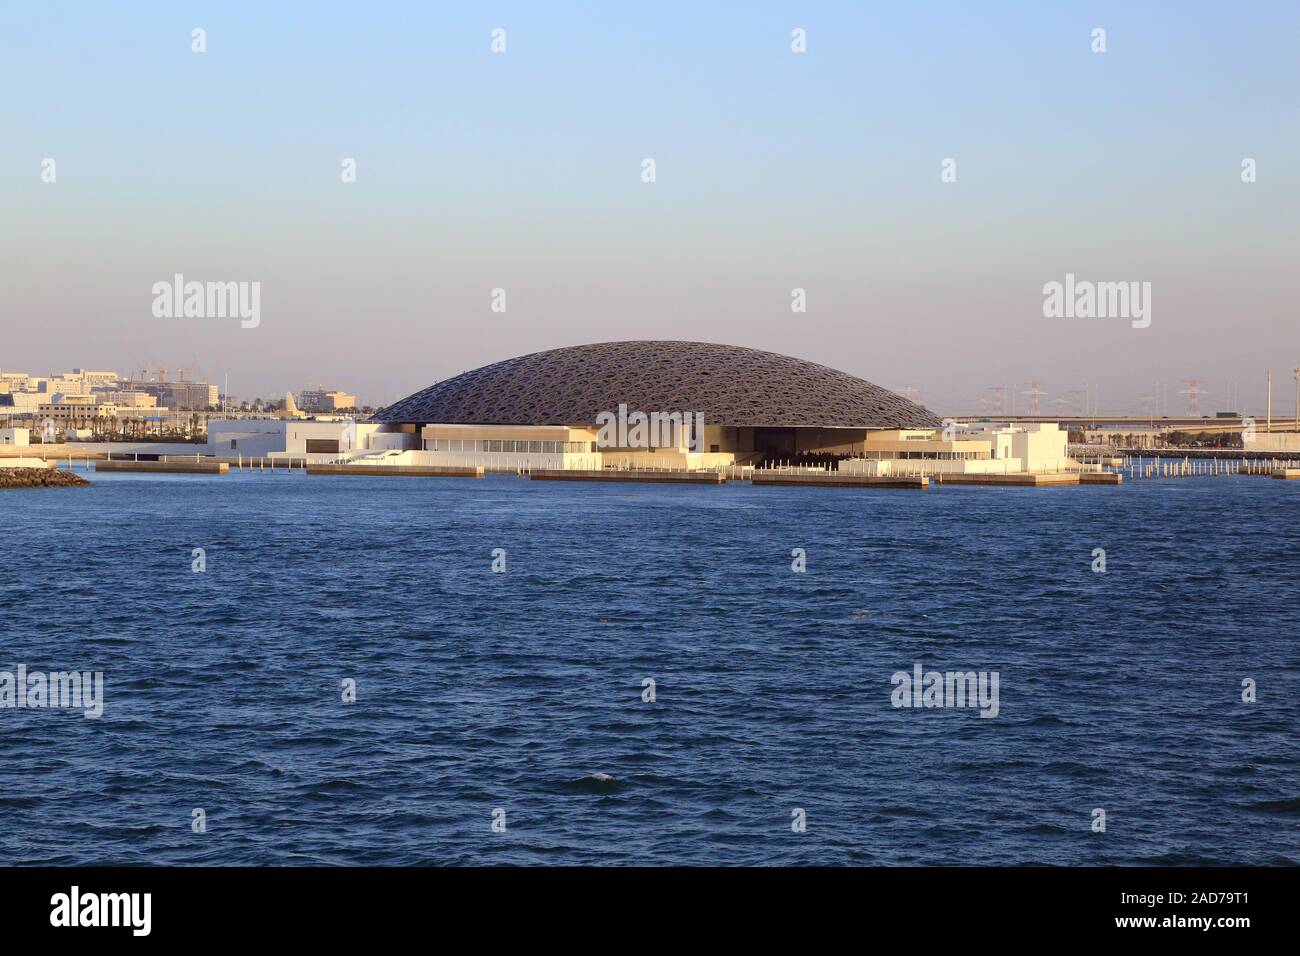 El Louvre Abu Dhabi, un museo de arte moderno con techo abovedado en el Golfo Pérsico Foto de stock